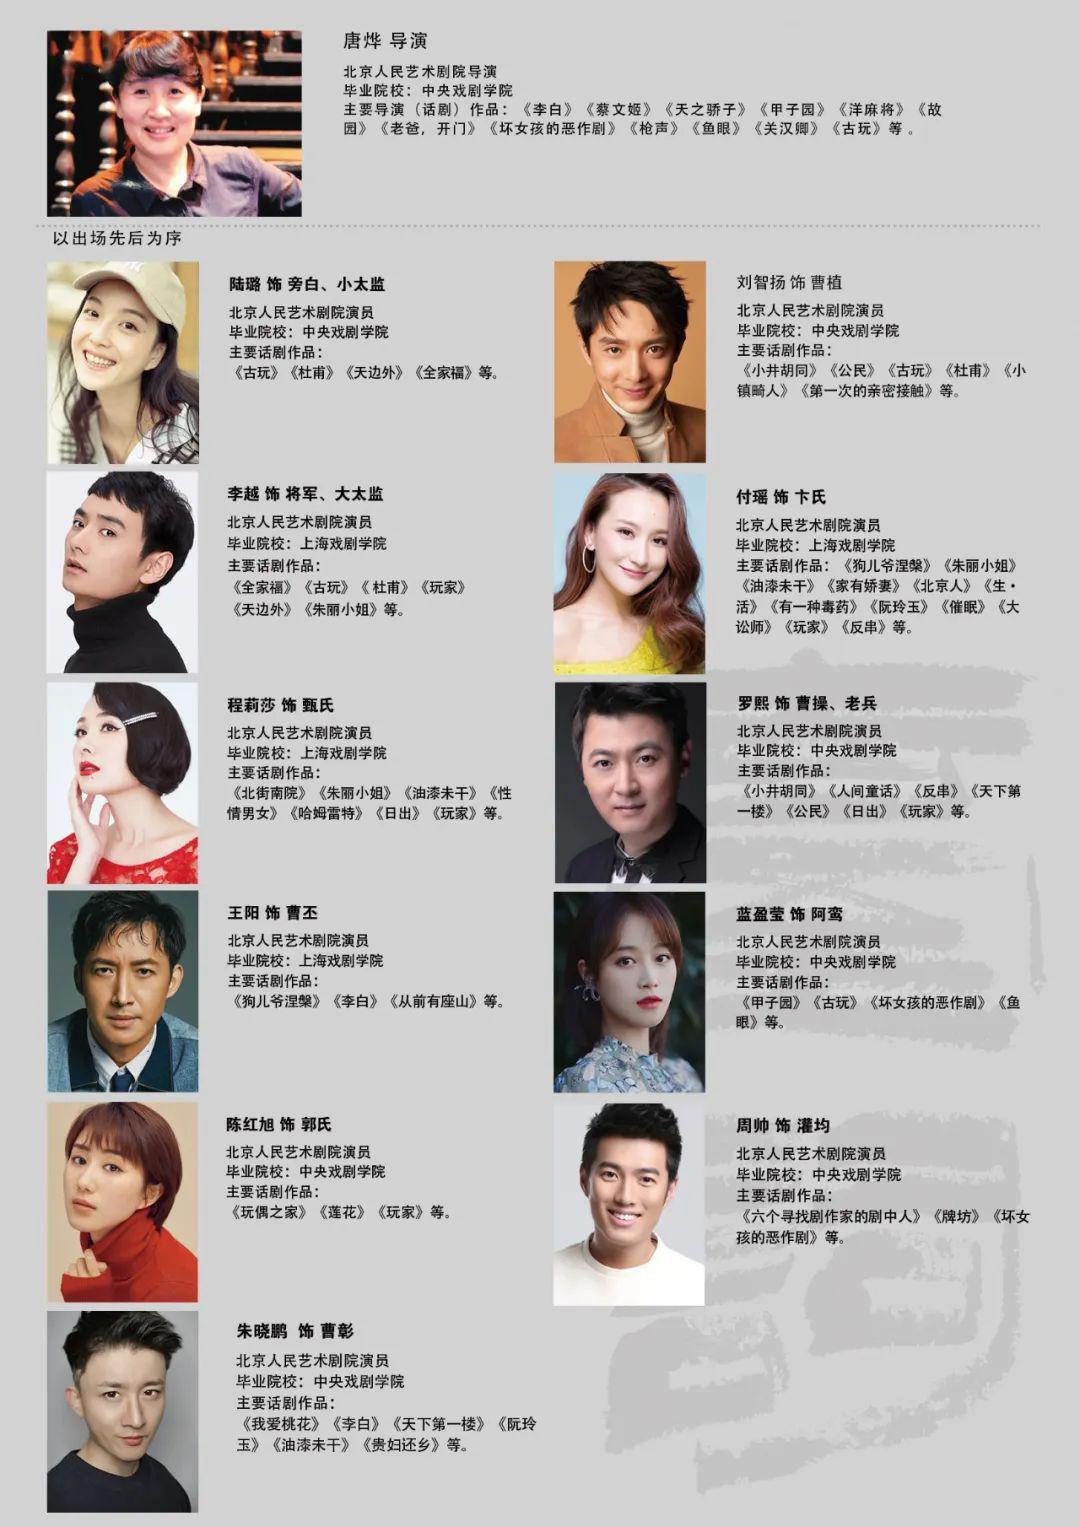 4月5日,北京人艺推出一场线上平台的剧本朗读直播,导演唐烨携青年演员